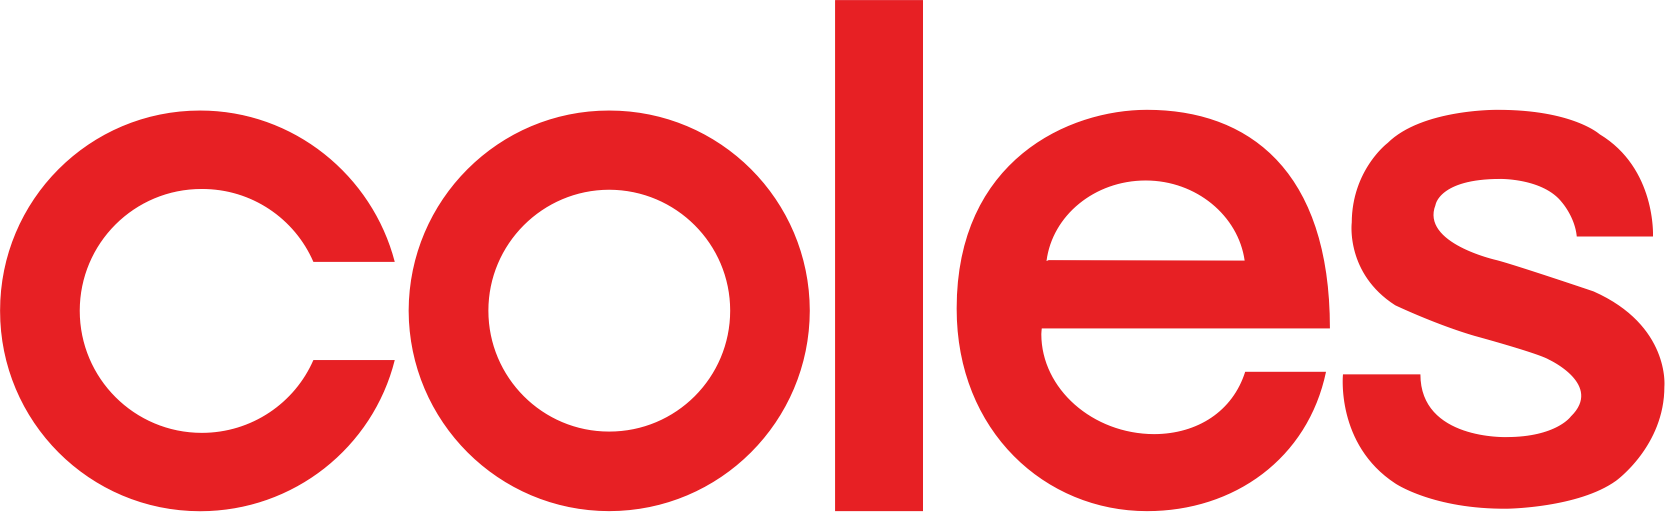 Coles Logo Png (1665x512)